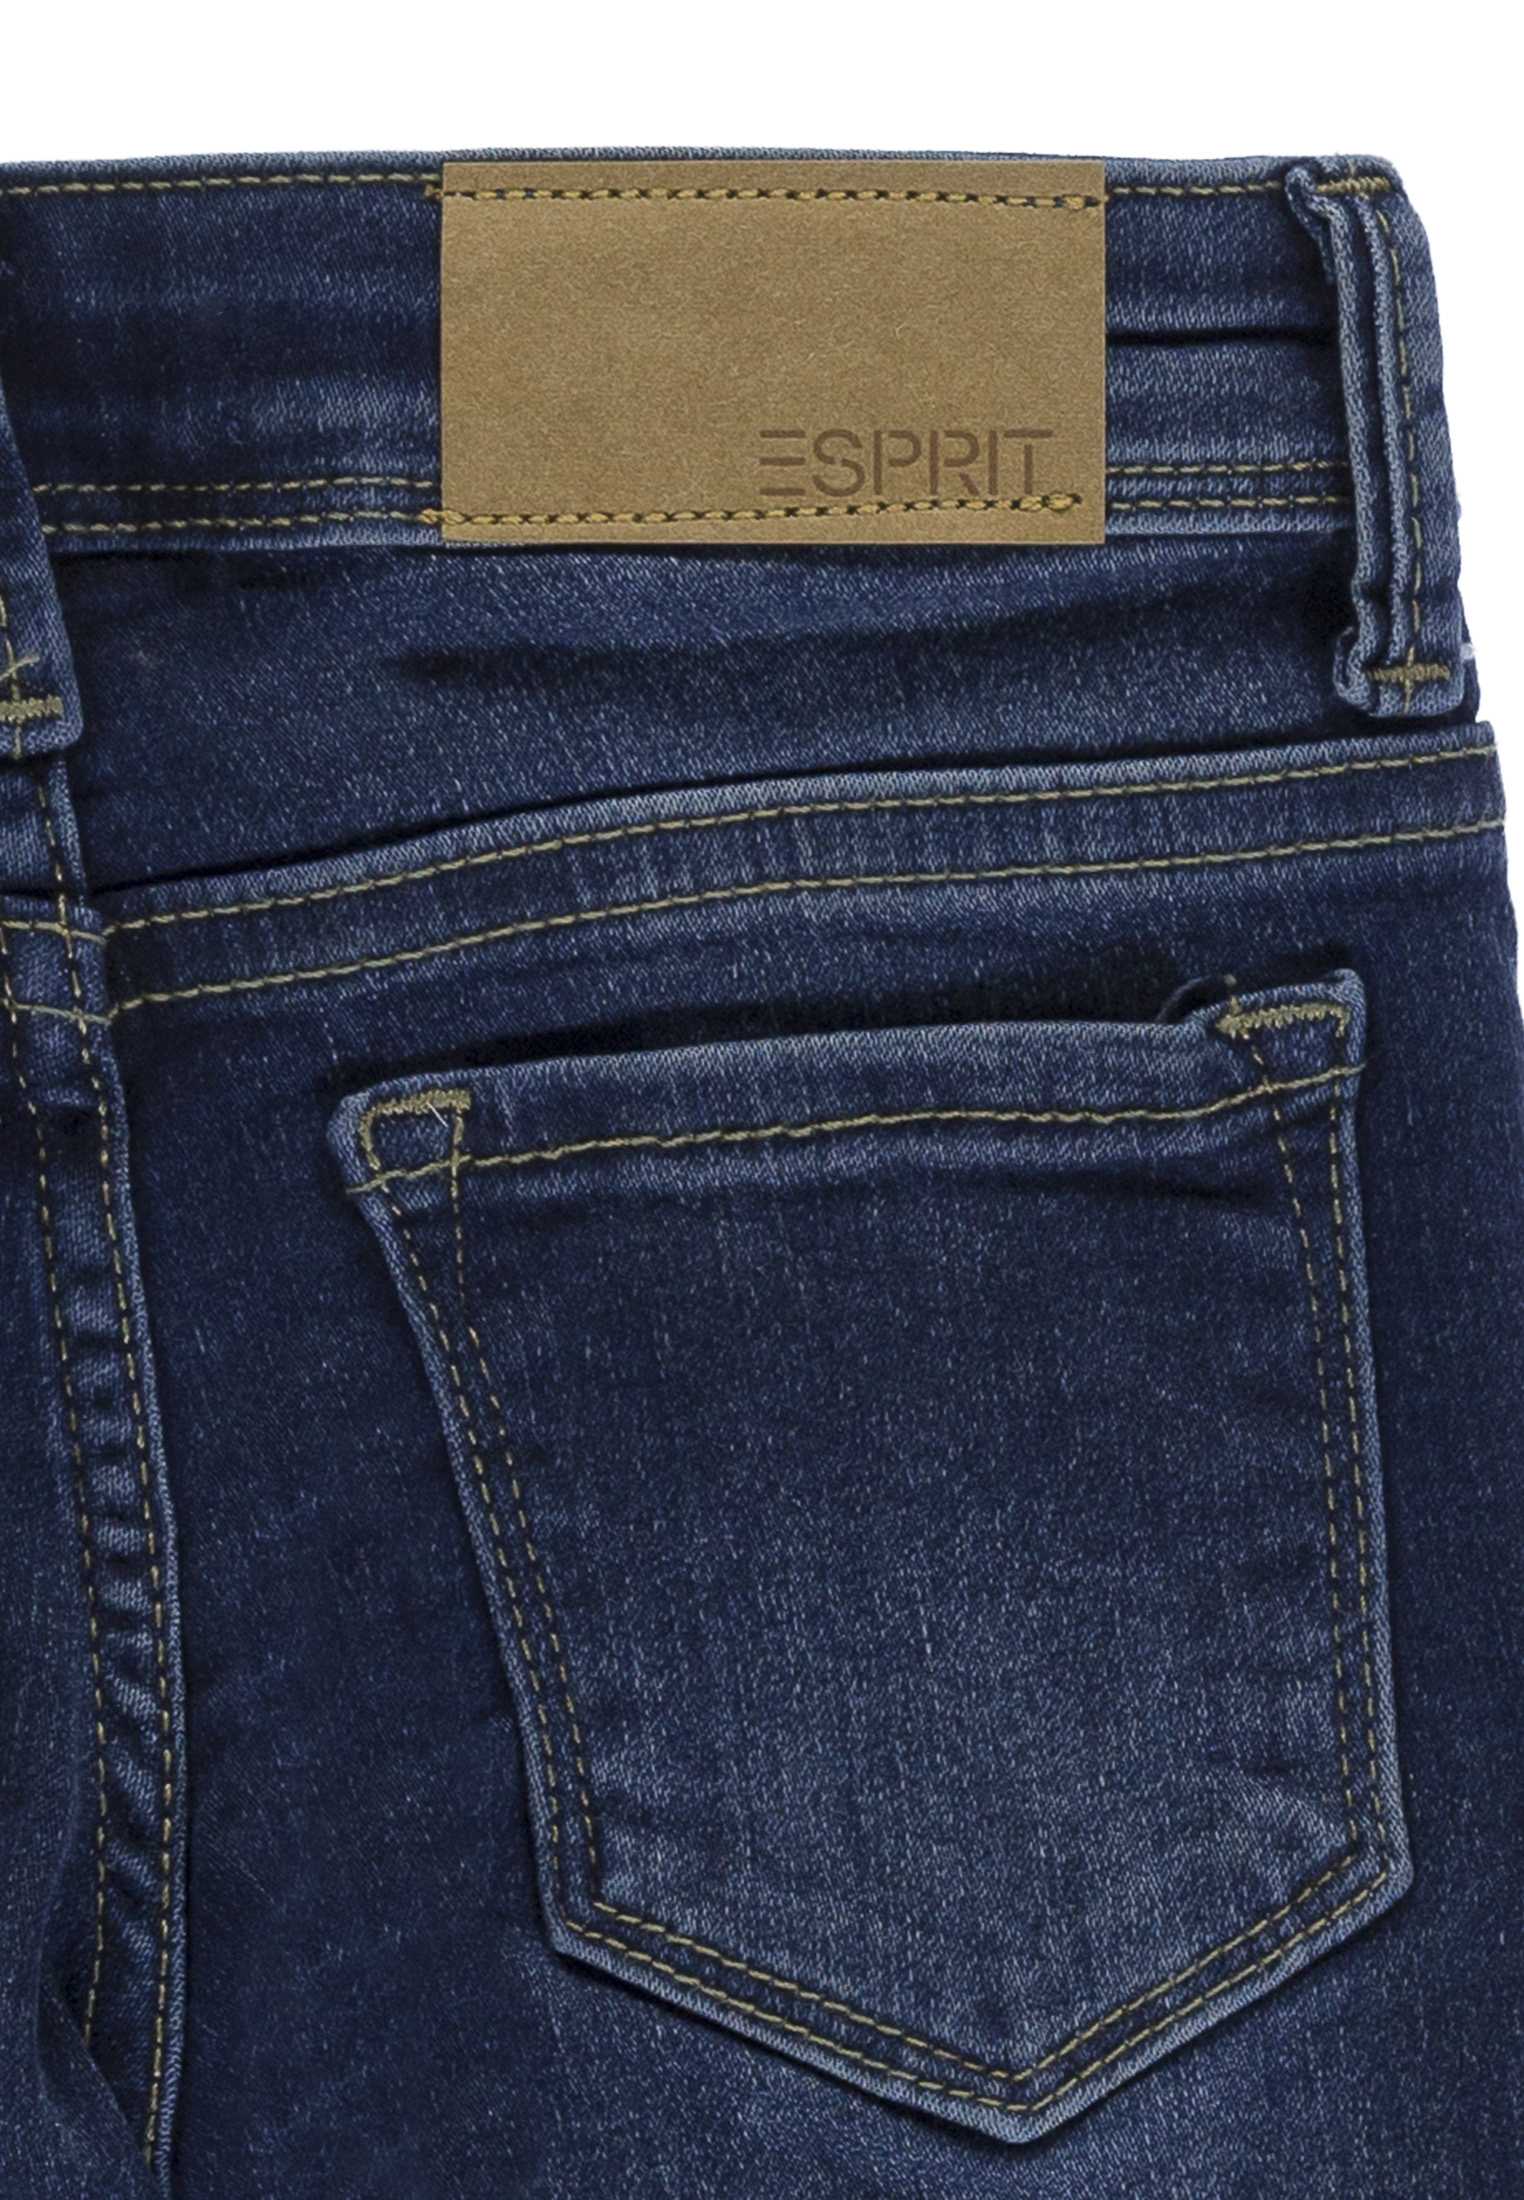 Spodnie jeansowe dla dziewczynki, Regular Fit, niebieskie, Esprit